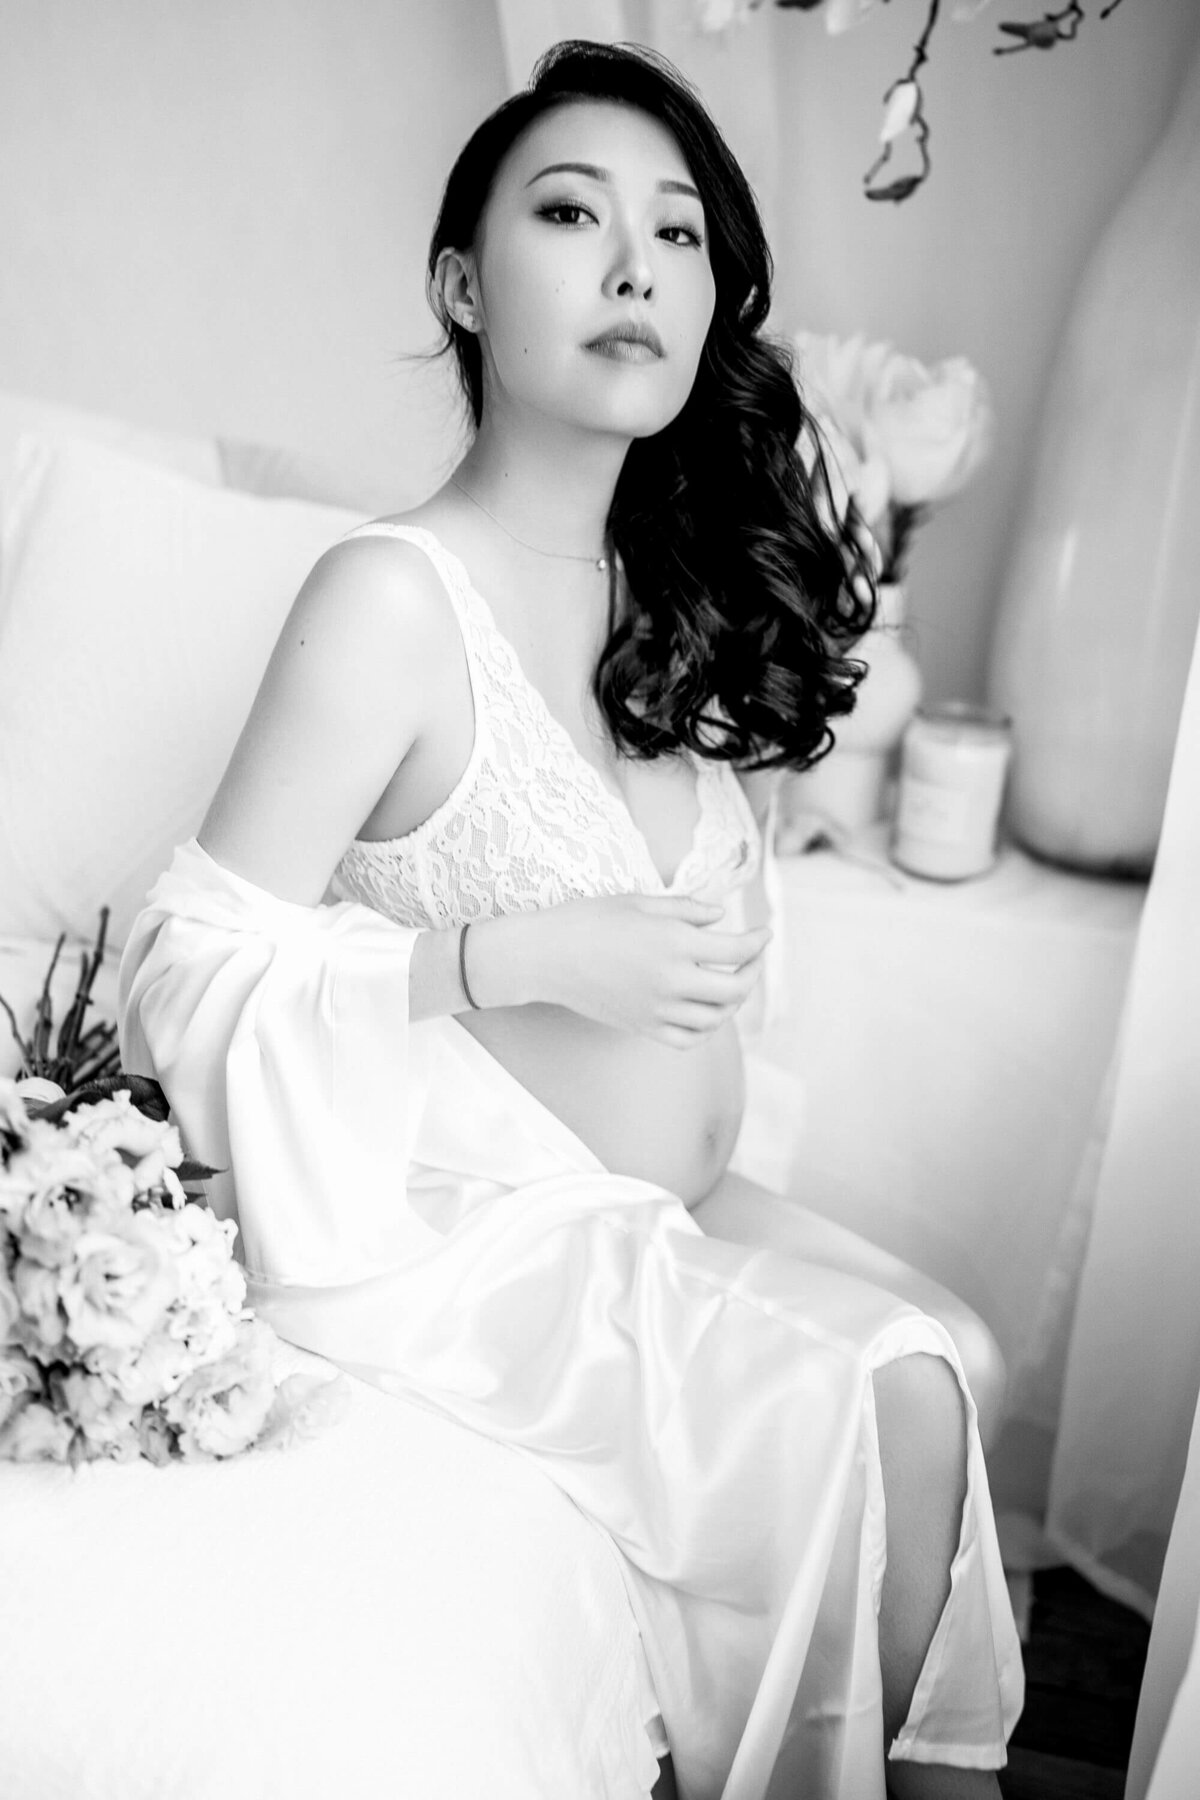 photo noir et blanc d'une femme enceinte en lingerie blanche